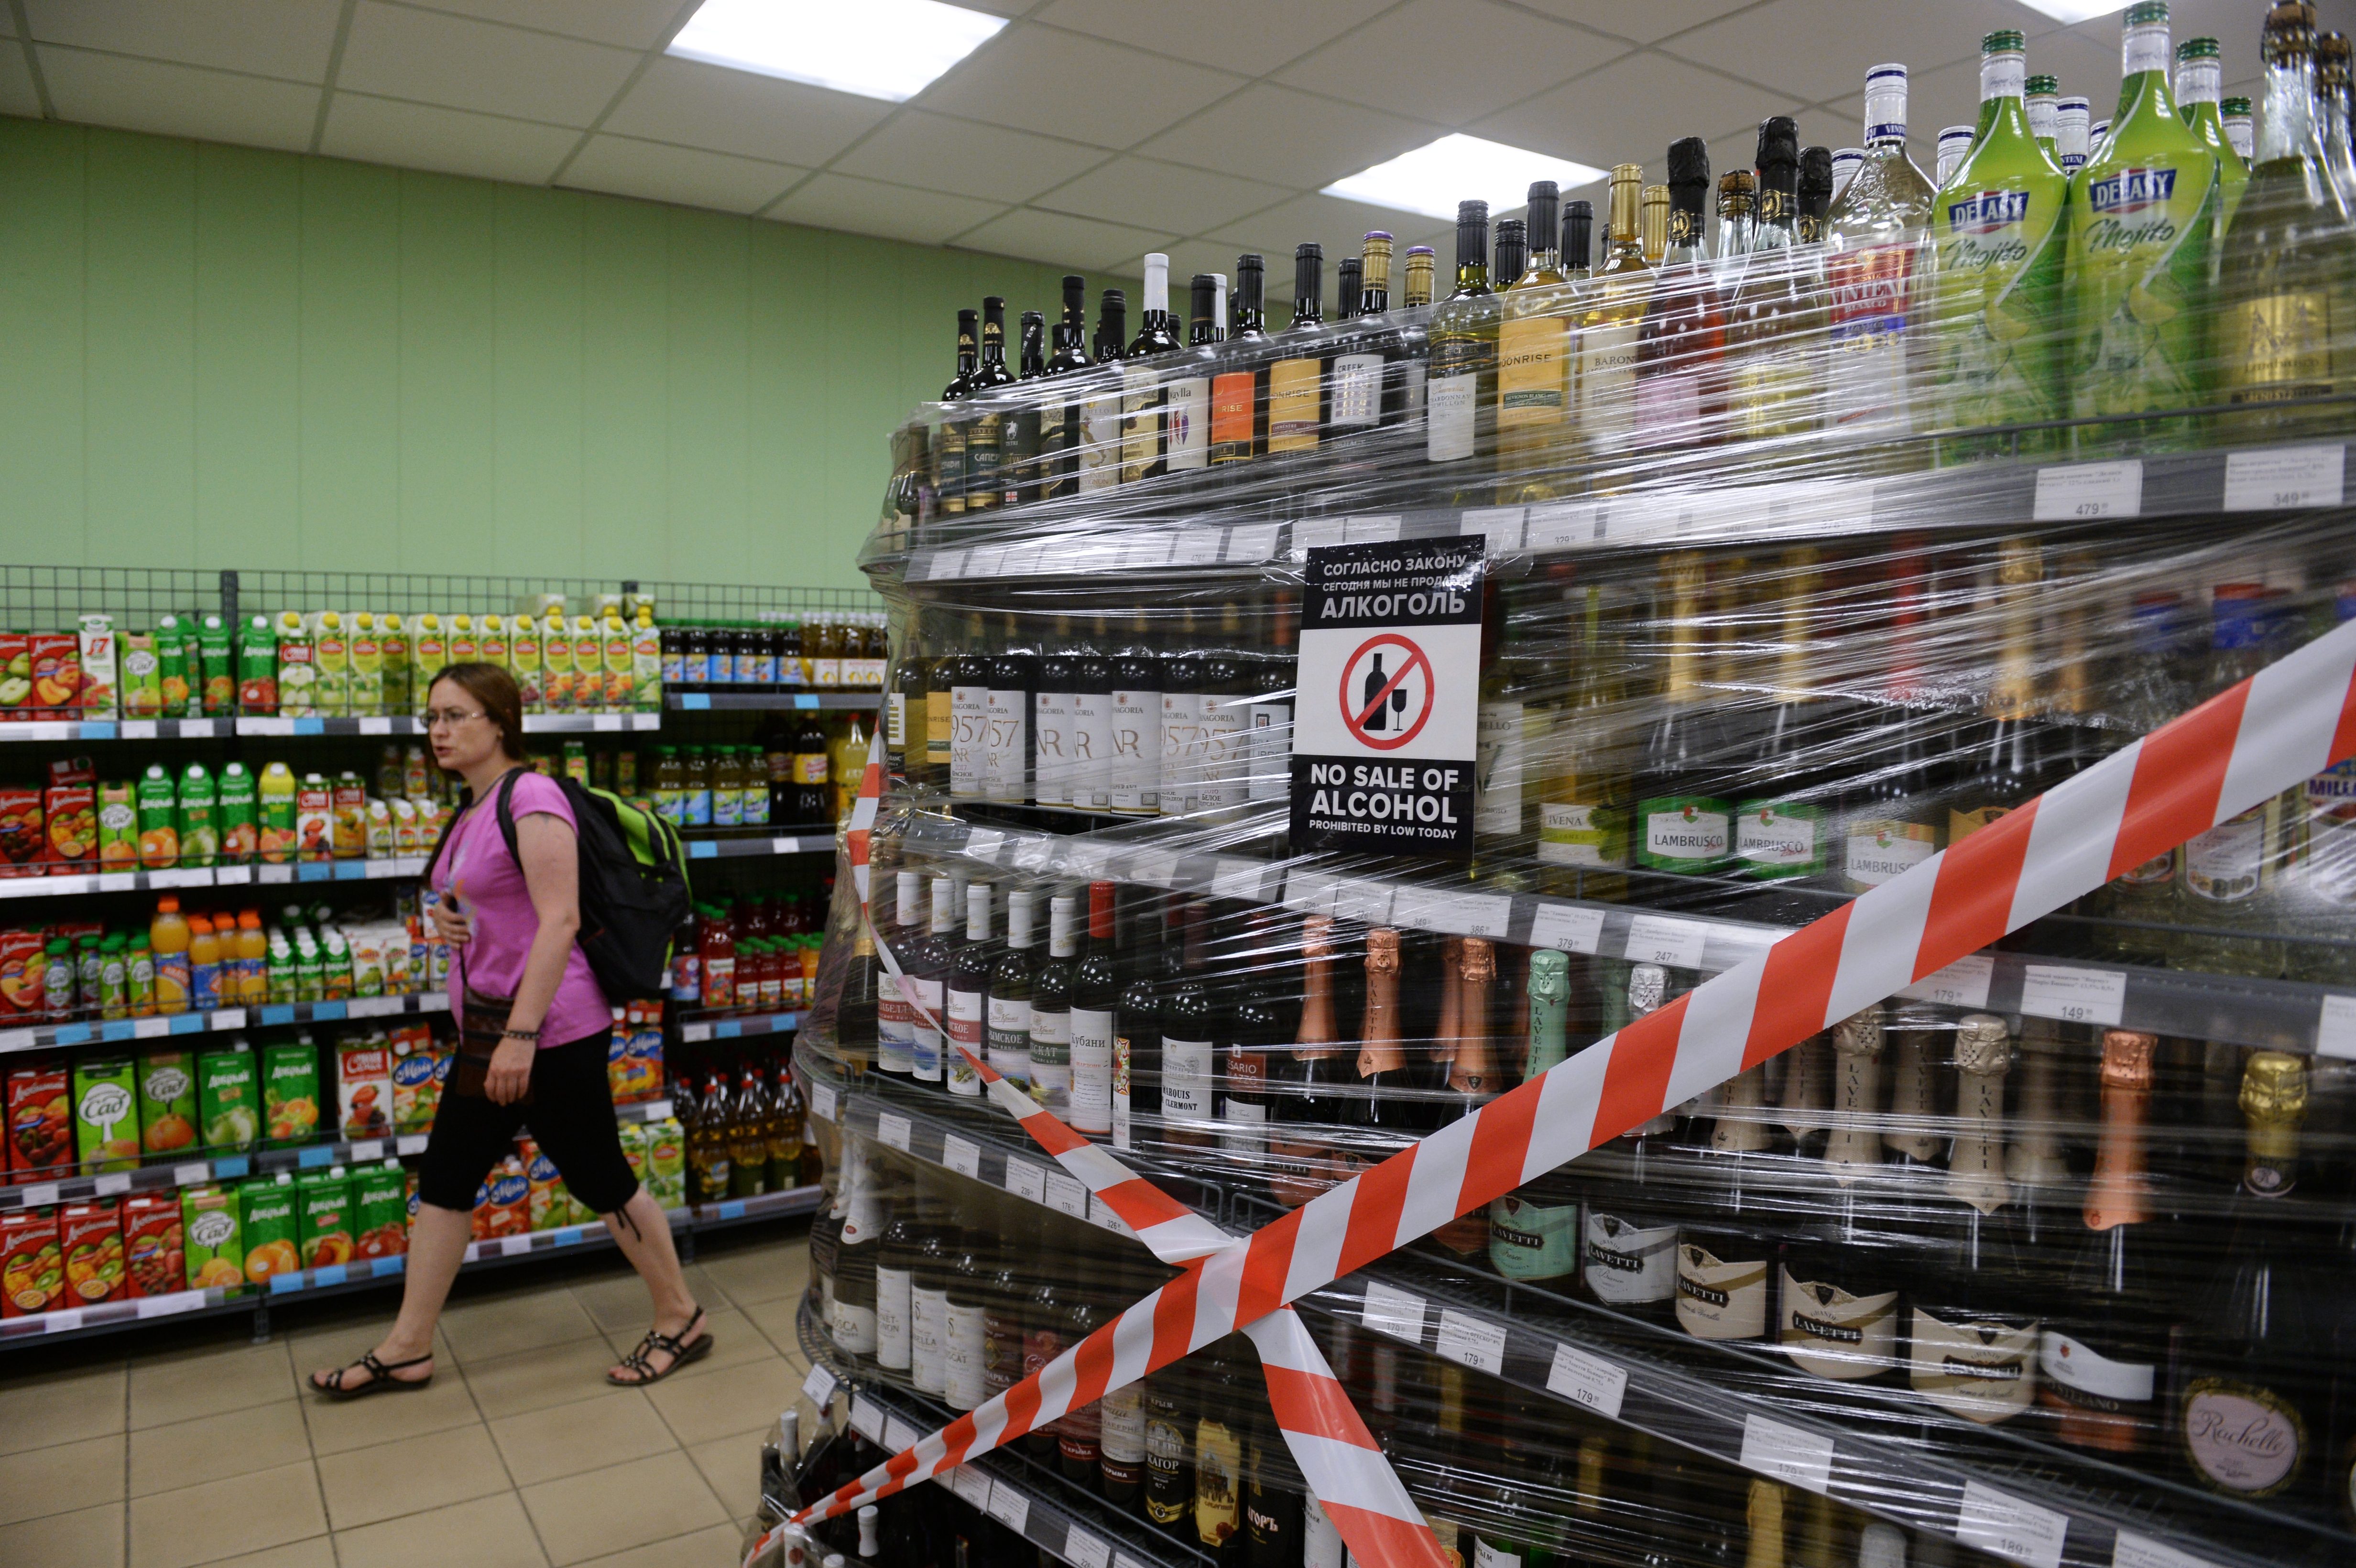 Реализация запрещена ограничена. Алкоголь не продают. Запрет на торговлю алкоголем.